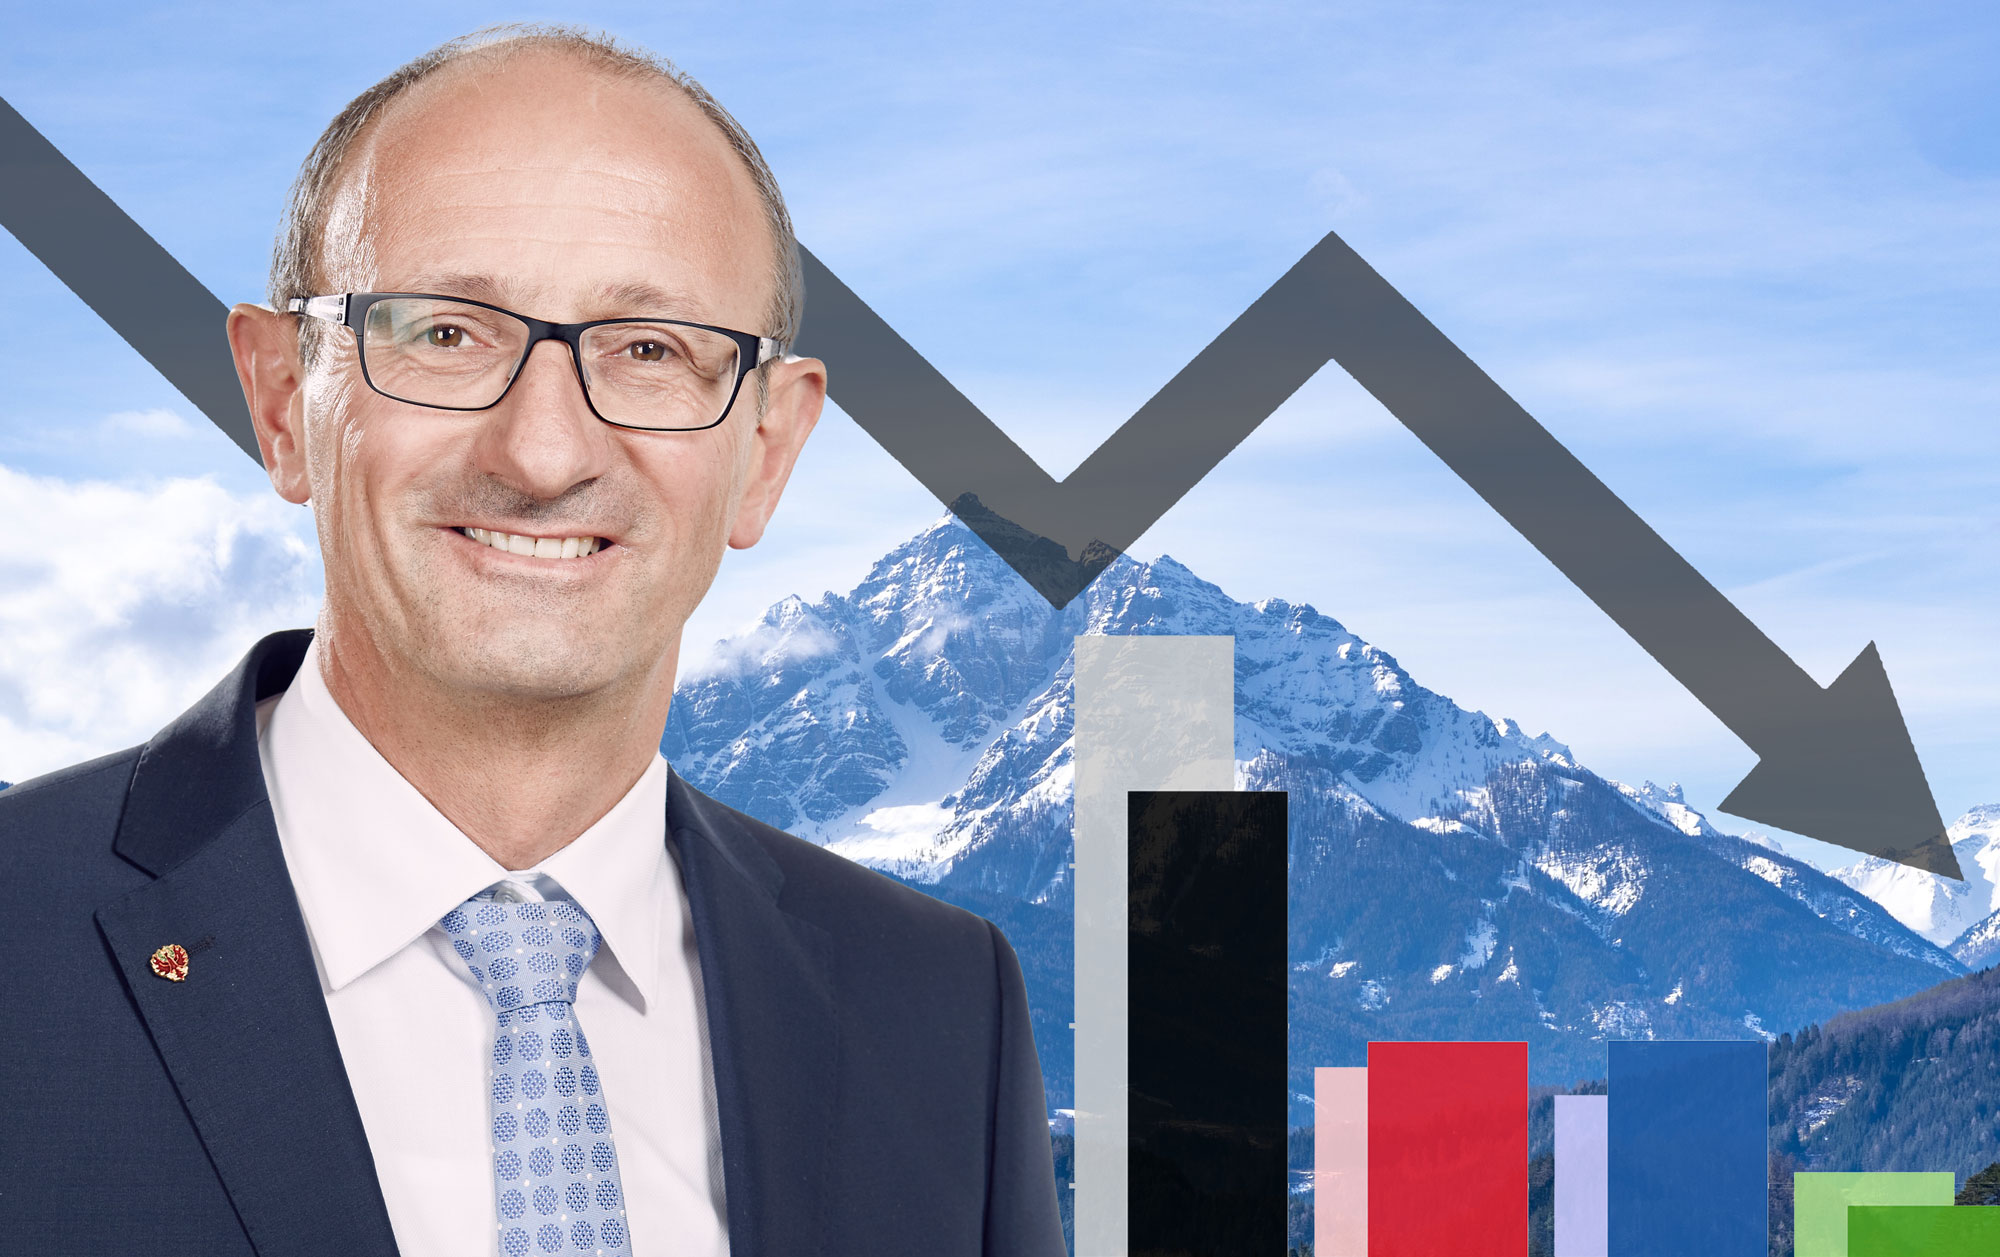 Tirol-Wahl: ÖVP stürzt ab, verliert mehr als ein Fünftel der Wähler und drei Mandate